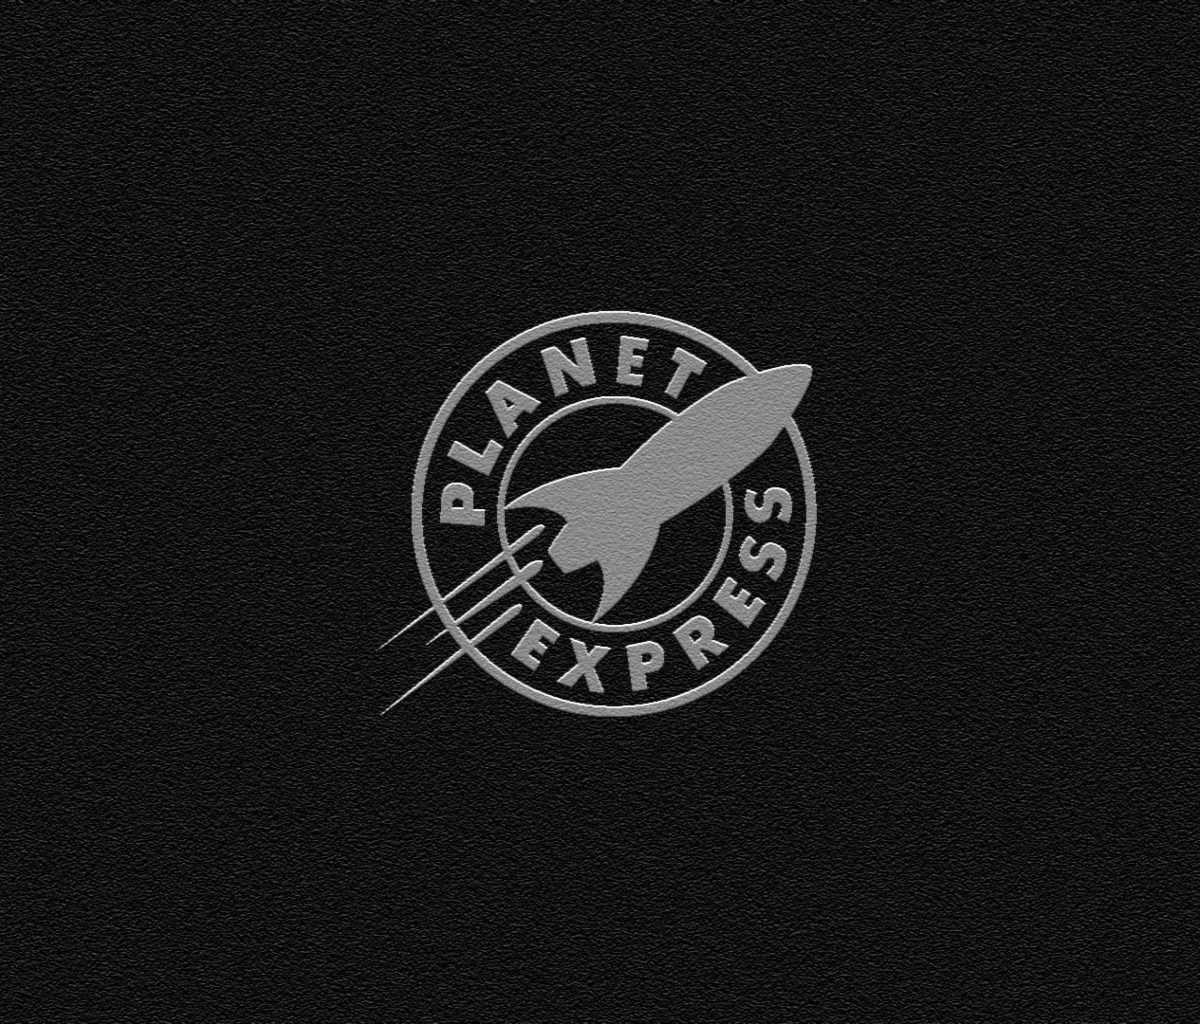 Das Planet Express Wallpaper 1200x1024